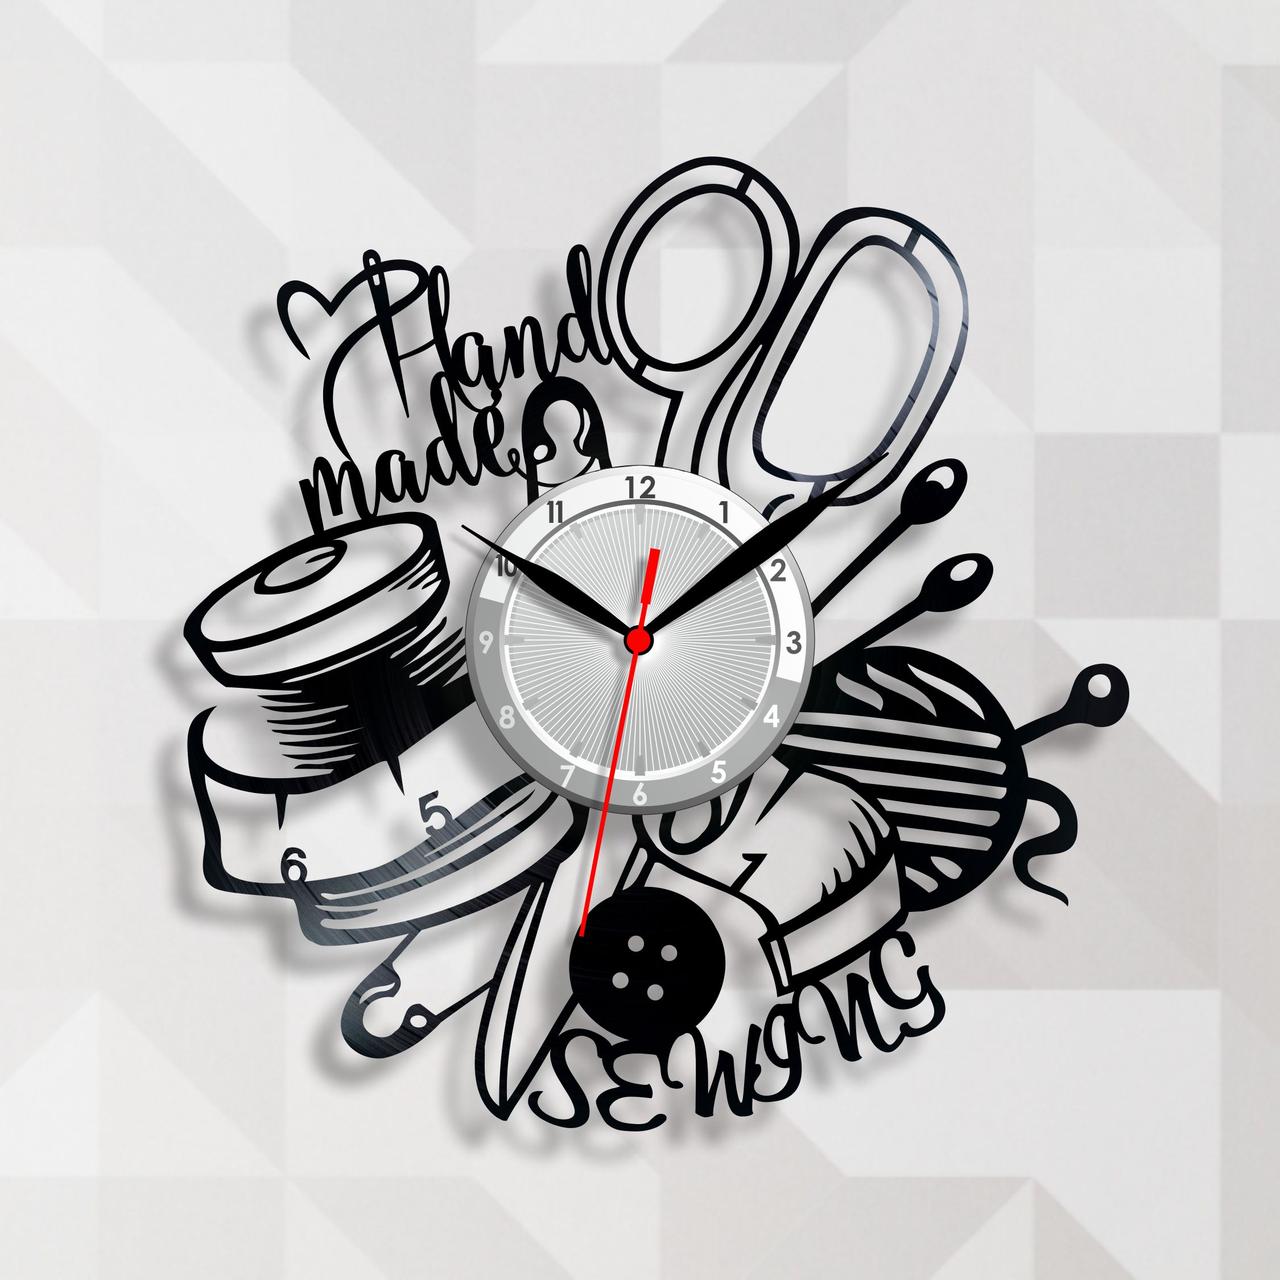 Годинник для майстра шиття Вінтажний годинник Шиття на годиннику Sewing Годинник у салон Вініловий декор Хенд мейд година 30 см